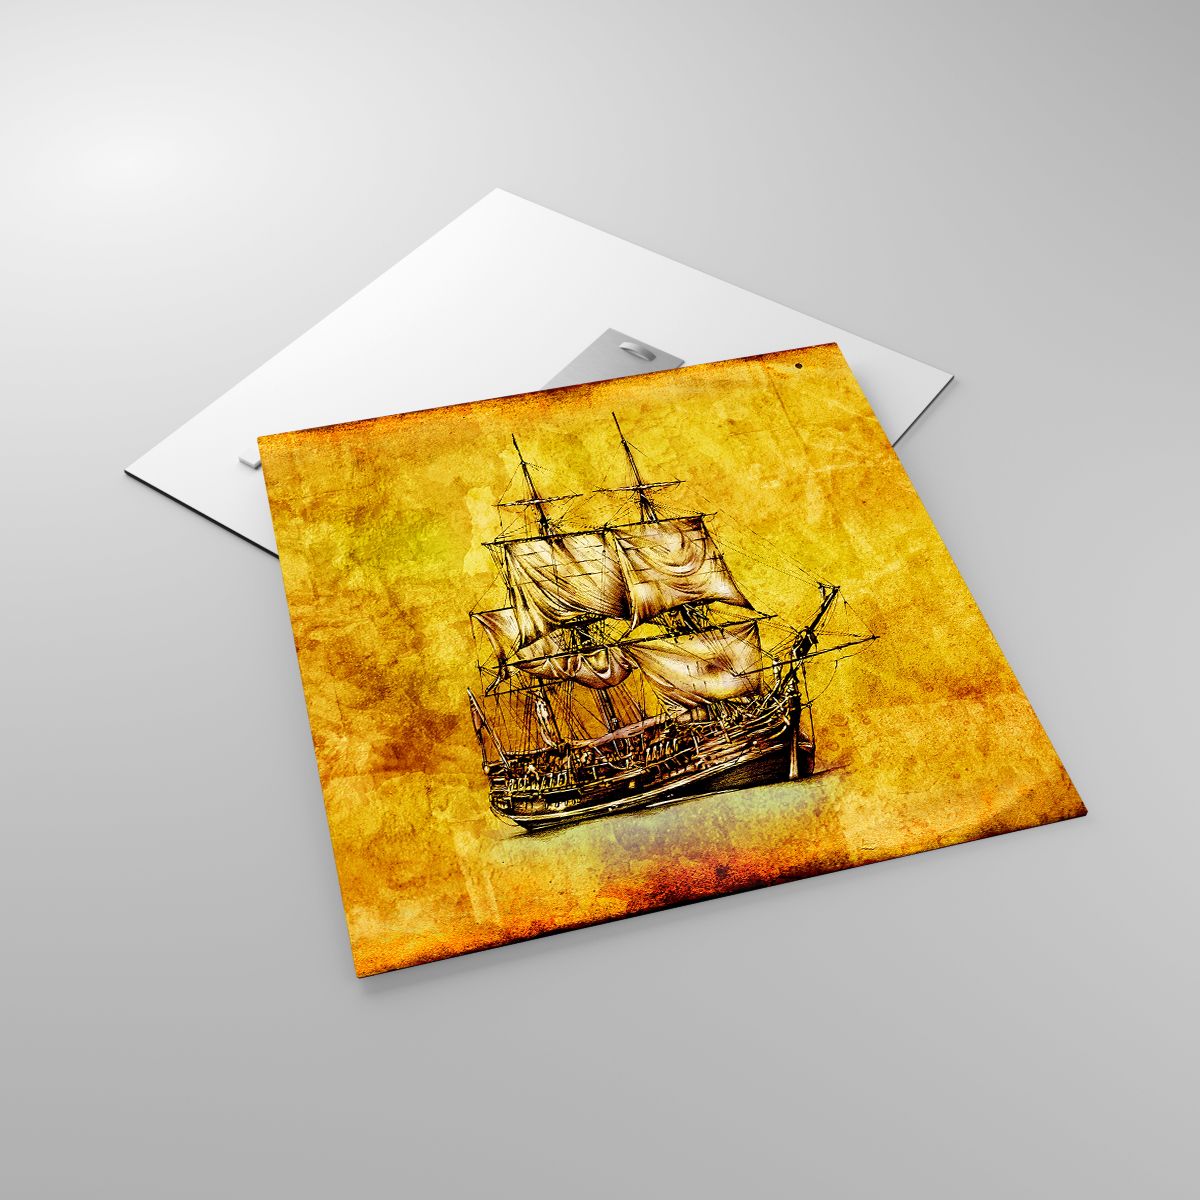 Glasbild Marine, Glasbild Seeschiff, Glasbild Segelschiff, Glasbild Reisen, Glasbild Jahrgang